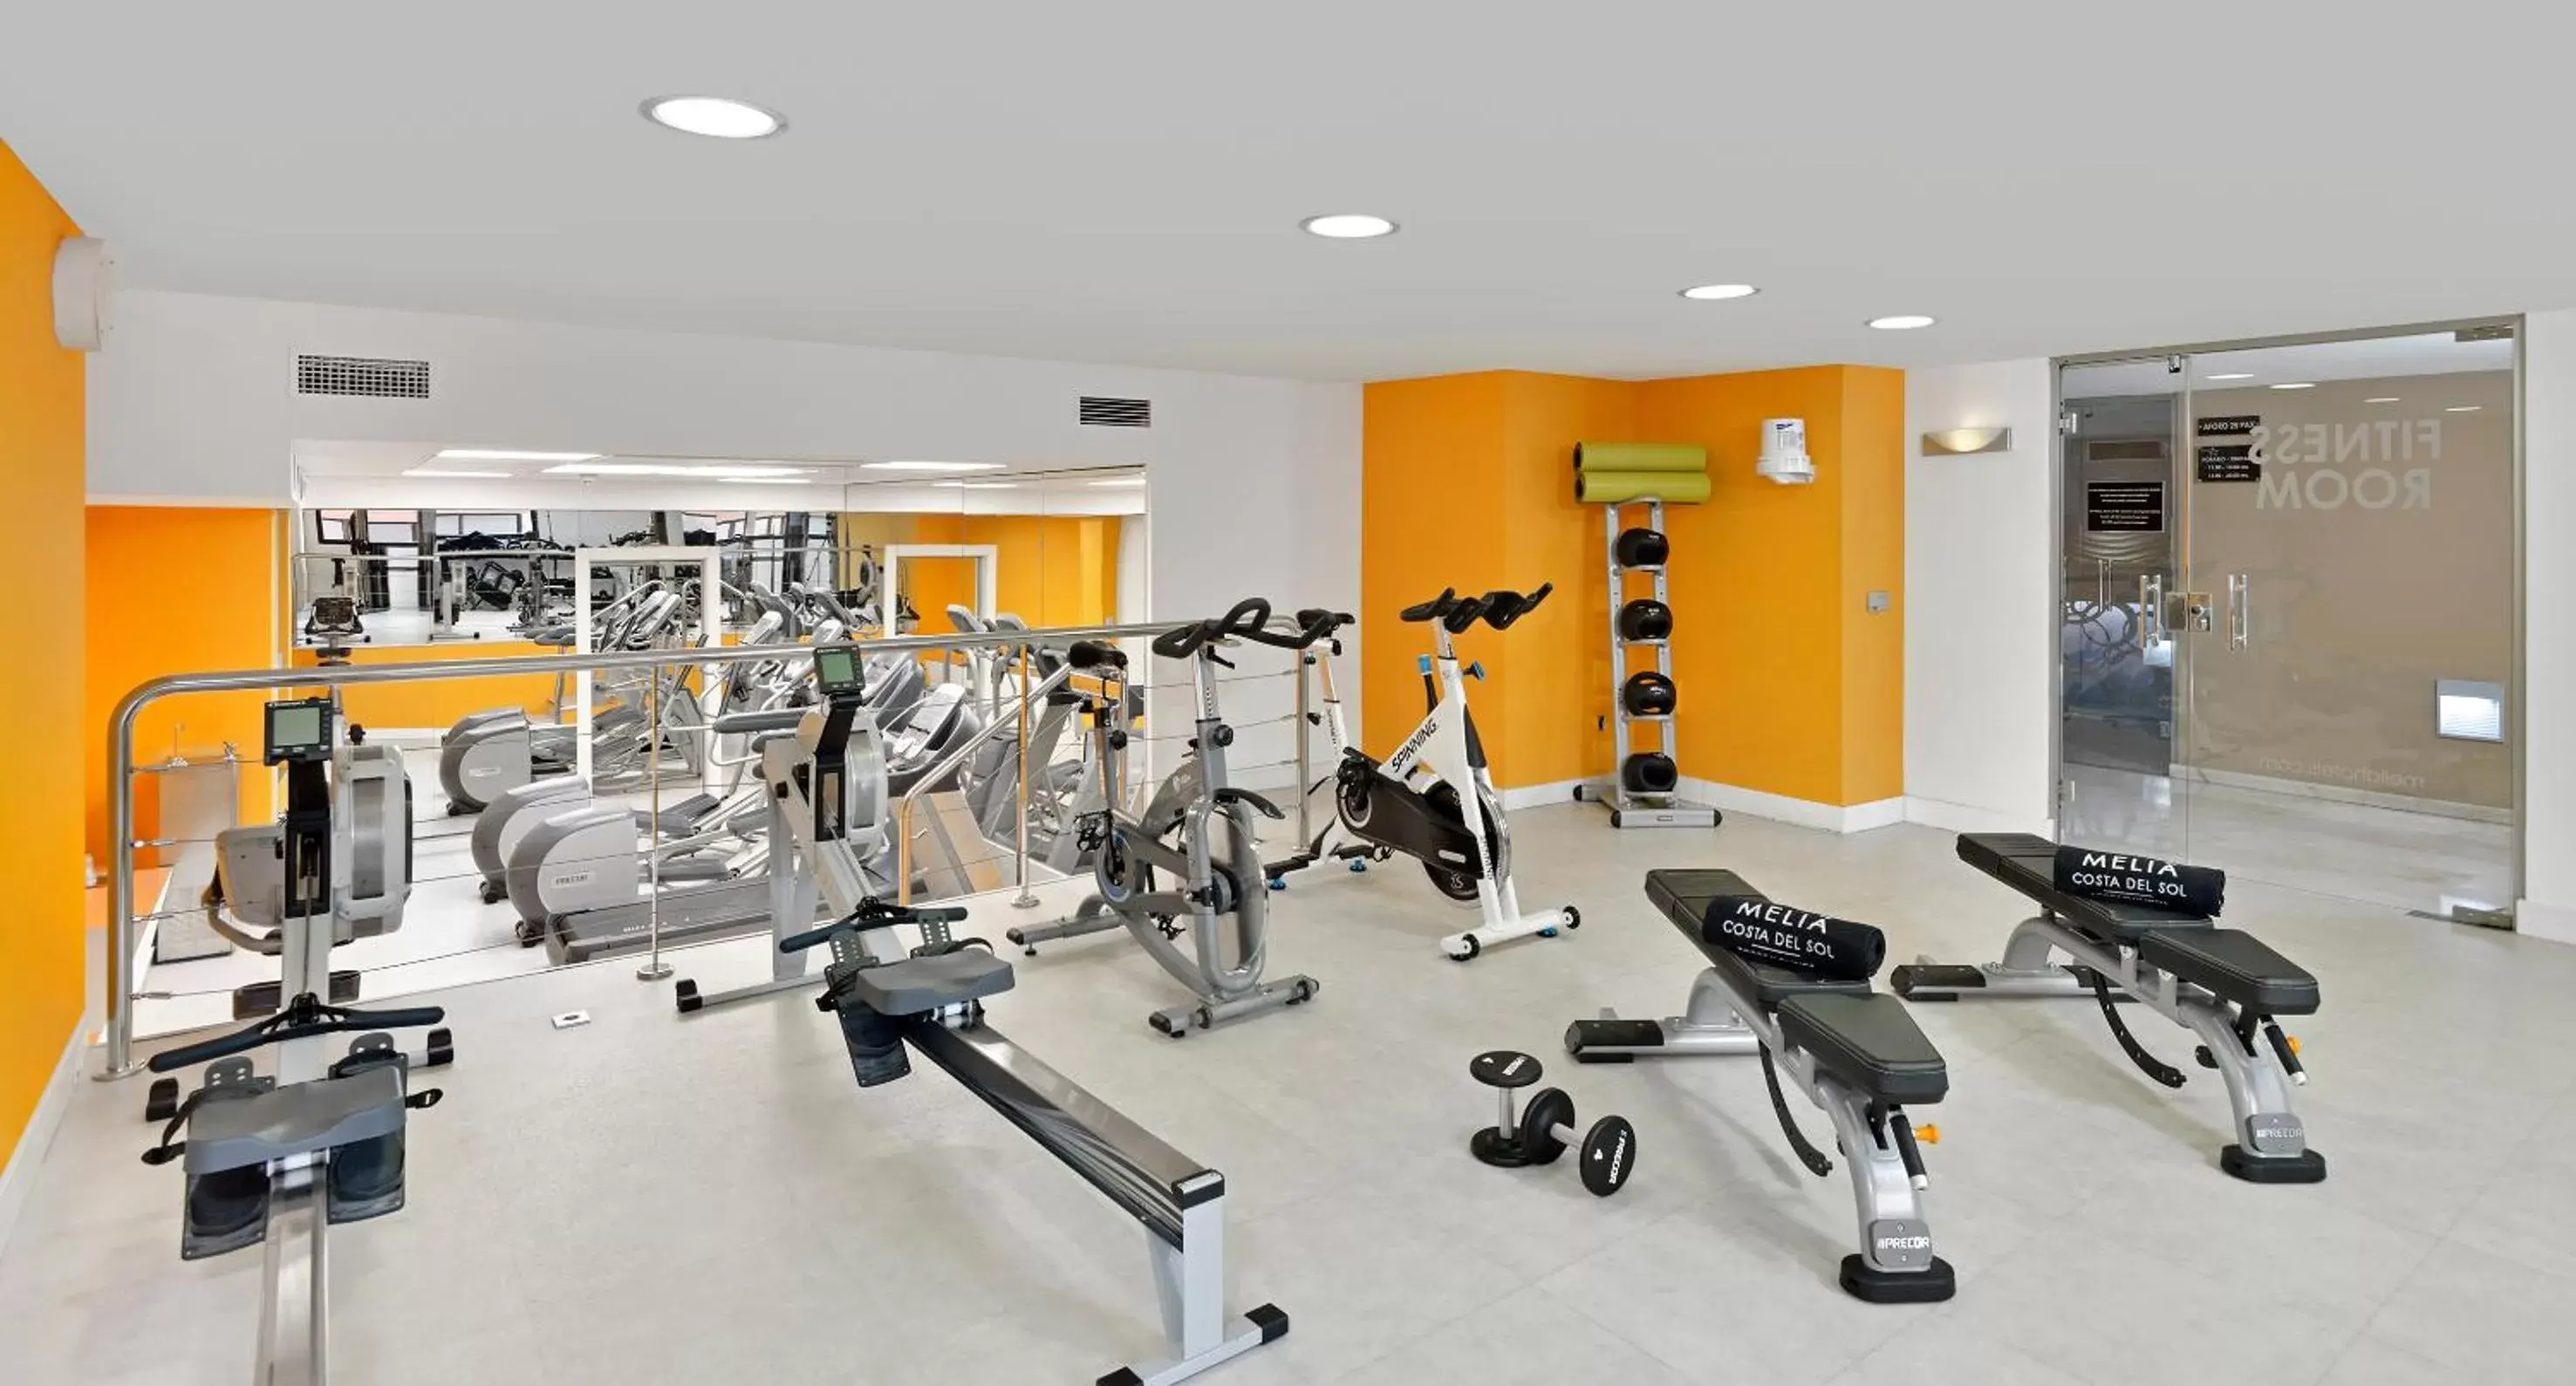 Fitness centre/facilities, Fitness Center/Facilities in Melia Costa del Sol